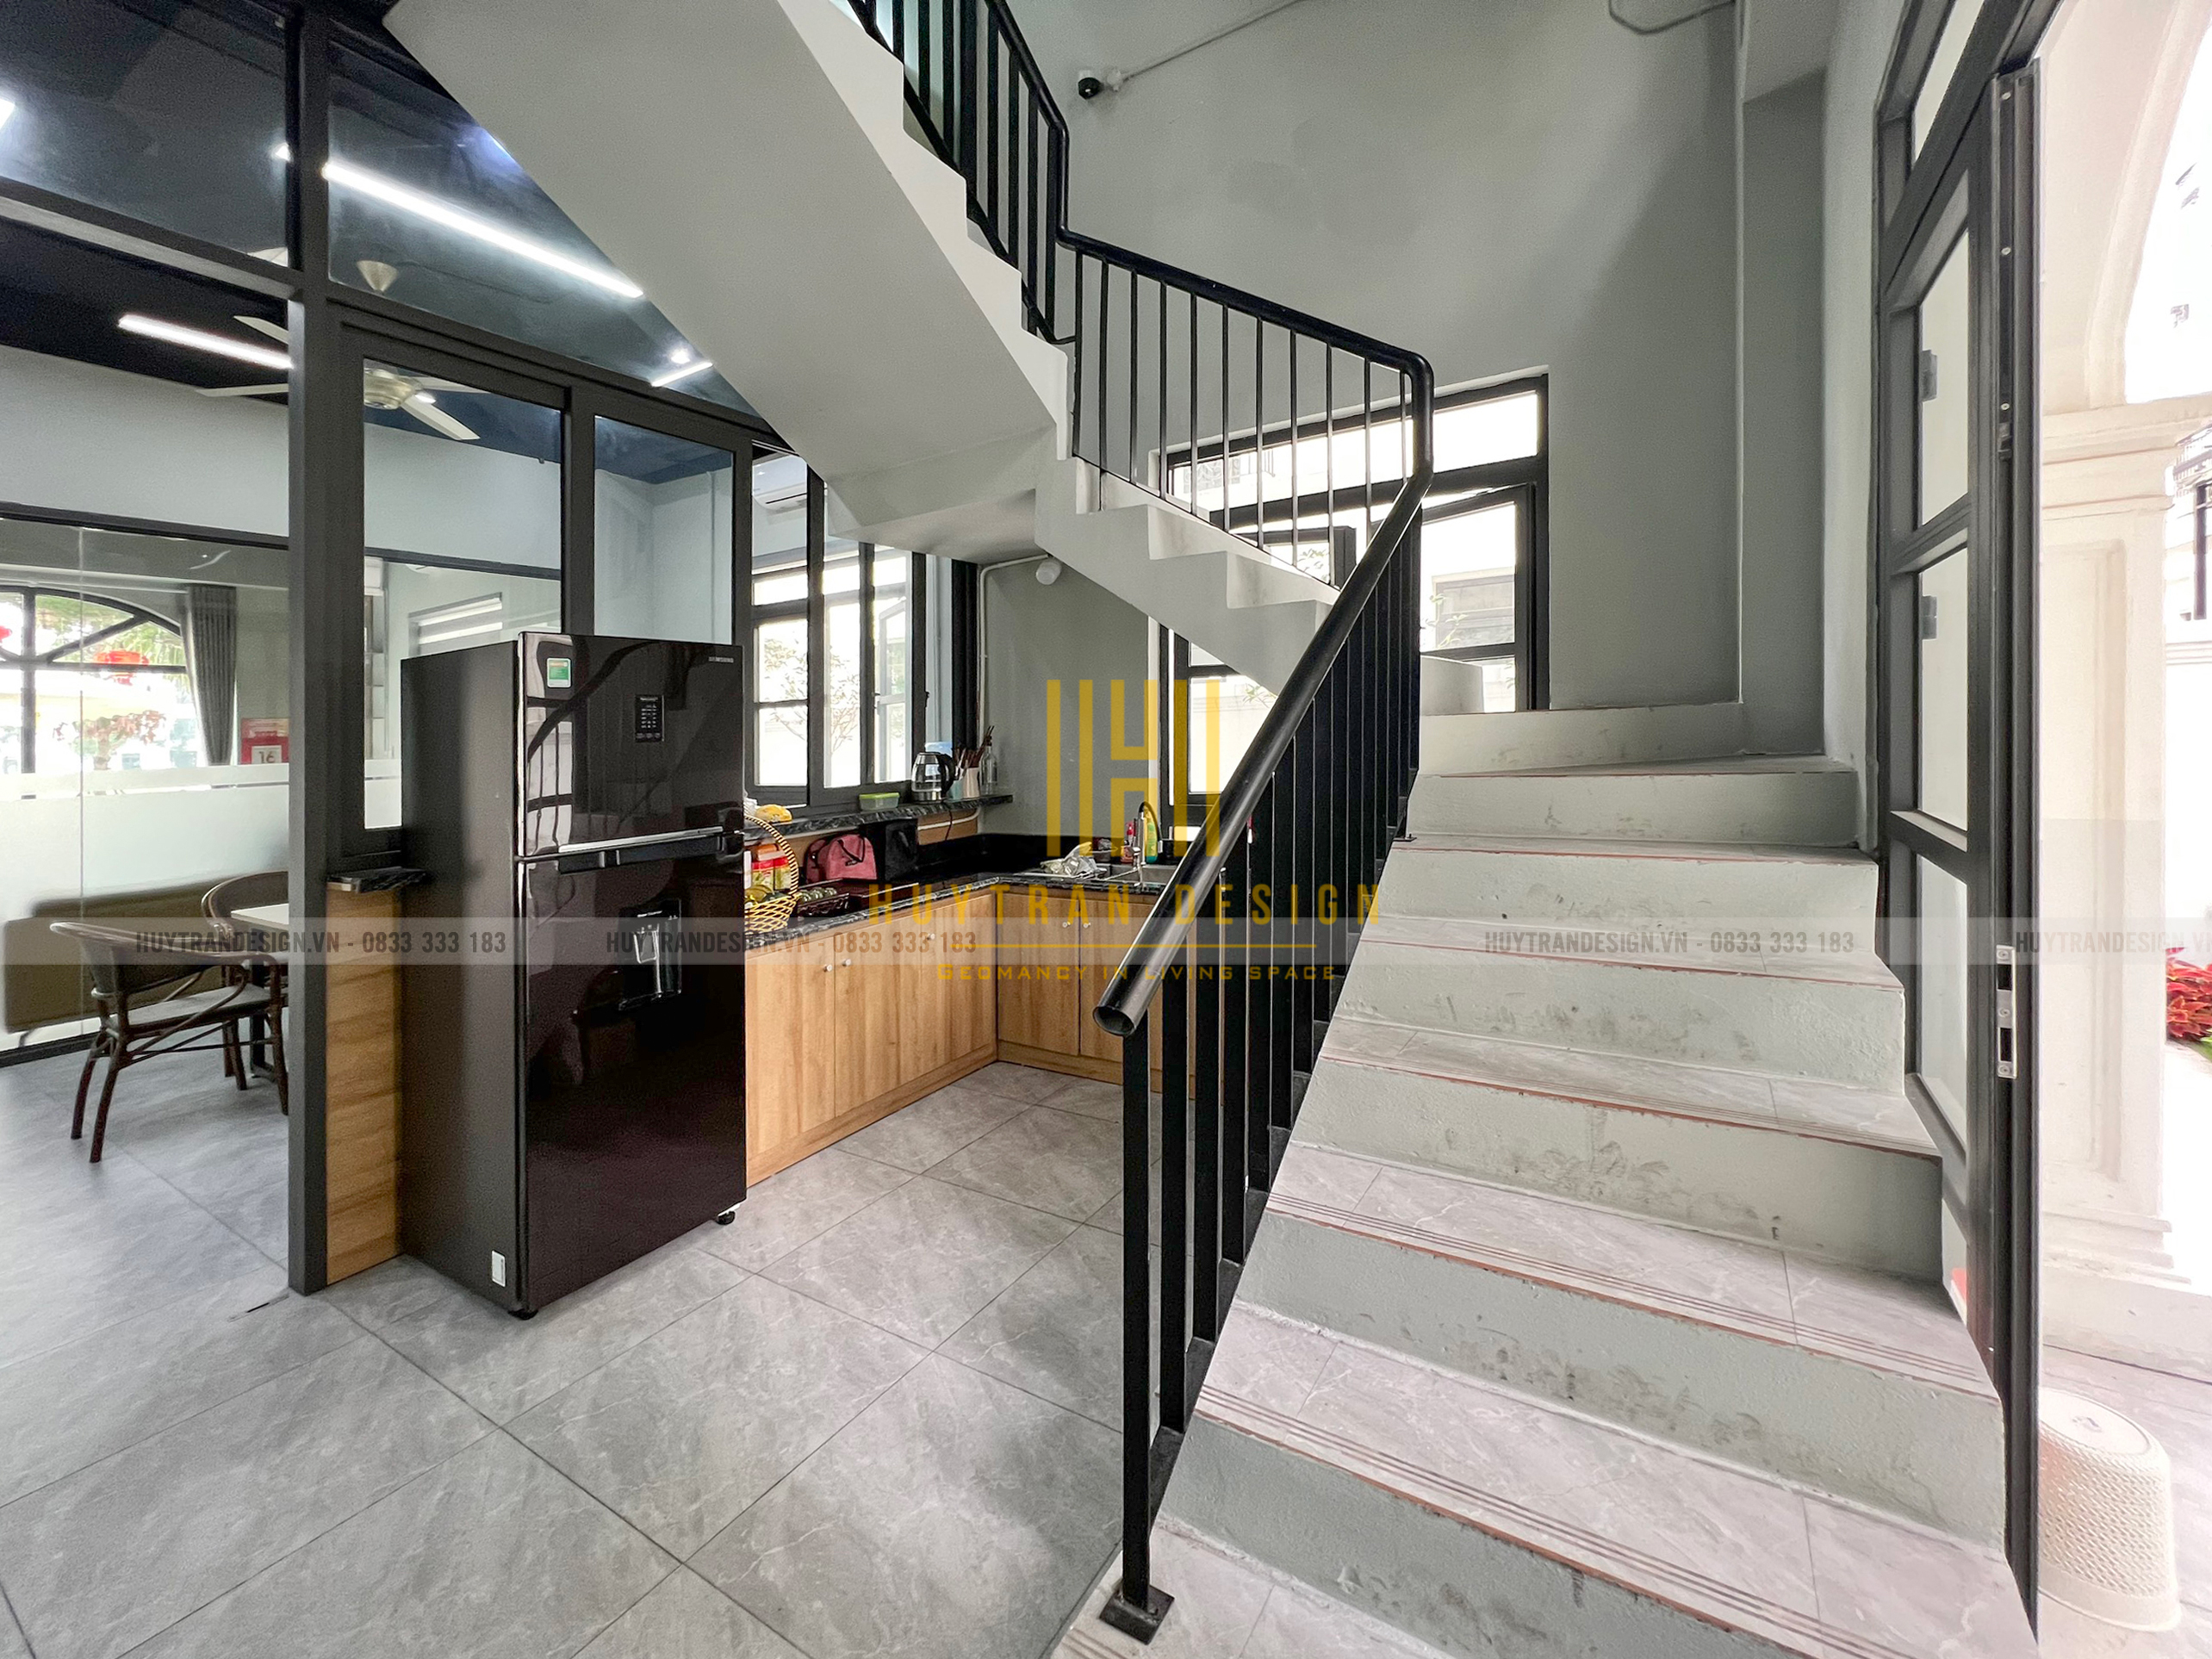 Thiết kế khu Pantry dành cho nhân viên văn phòng - Thiết kế nội, ngoại thất Huy Trần Design